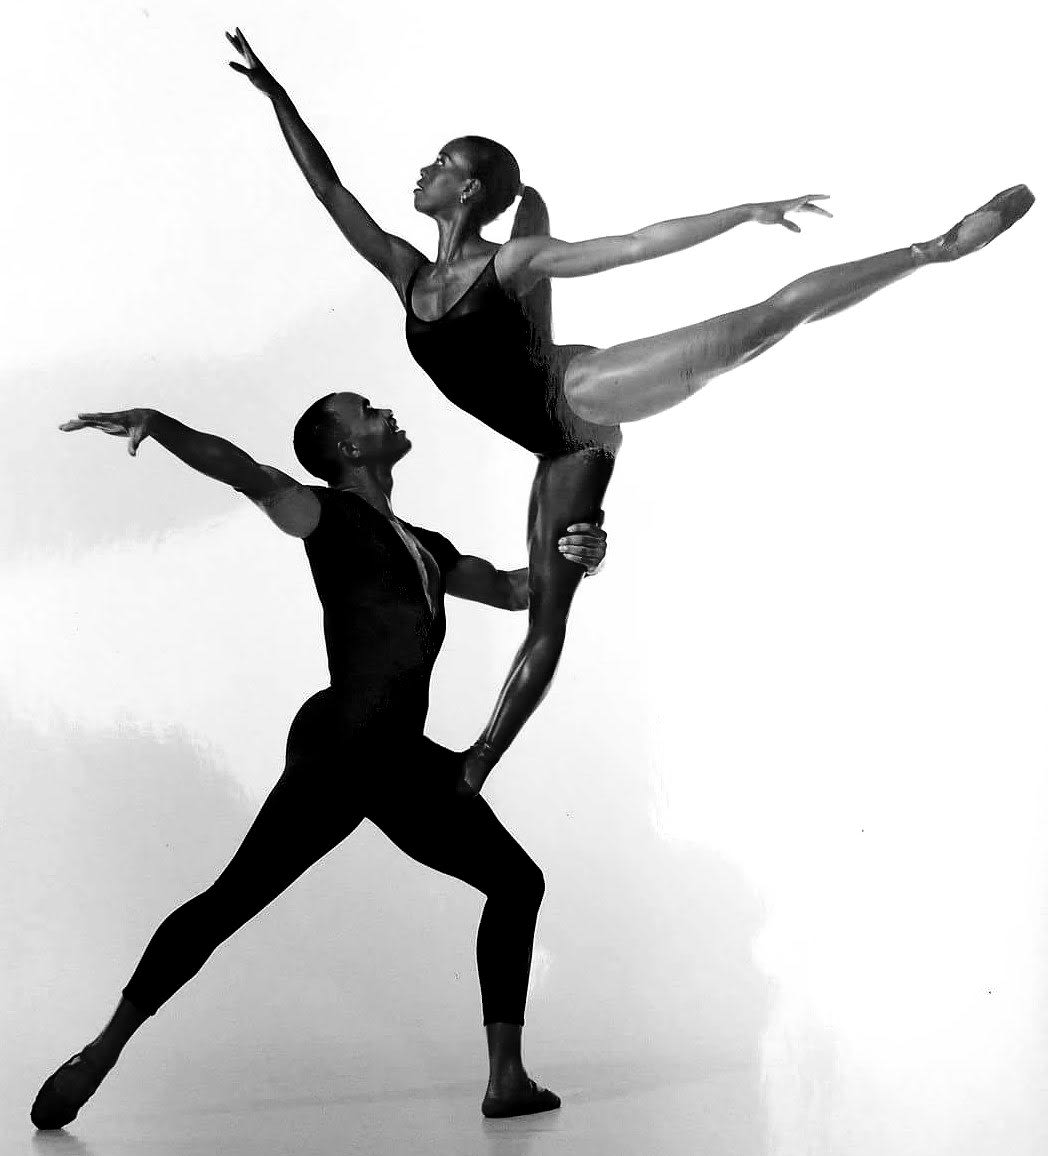 962 Ballet Duet Images, Stock Photos & Vectors | Shutterstock